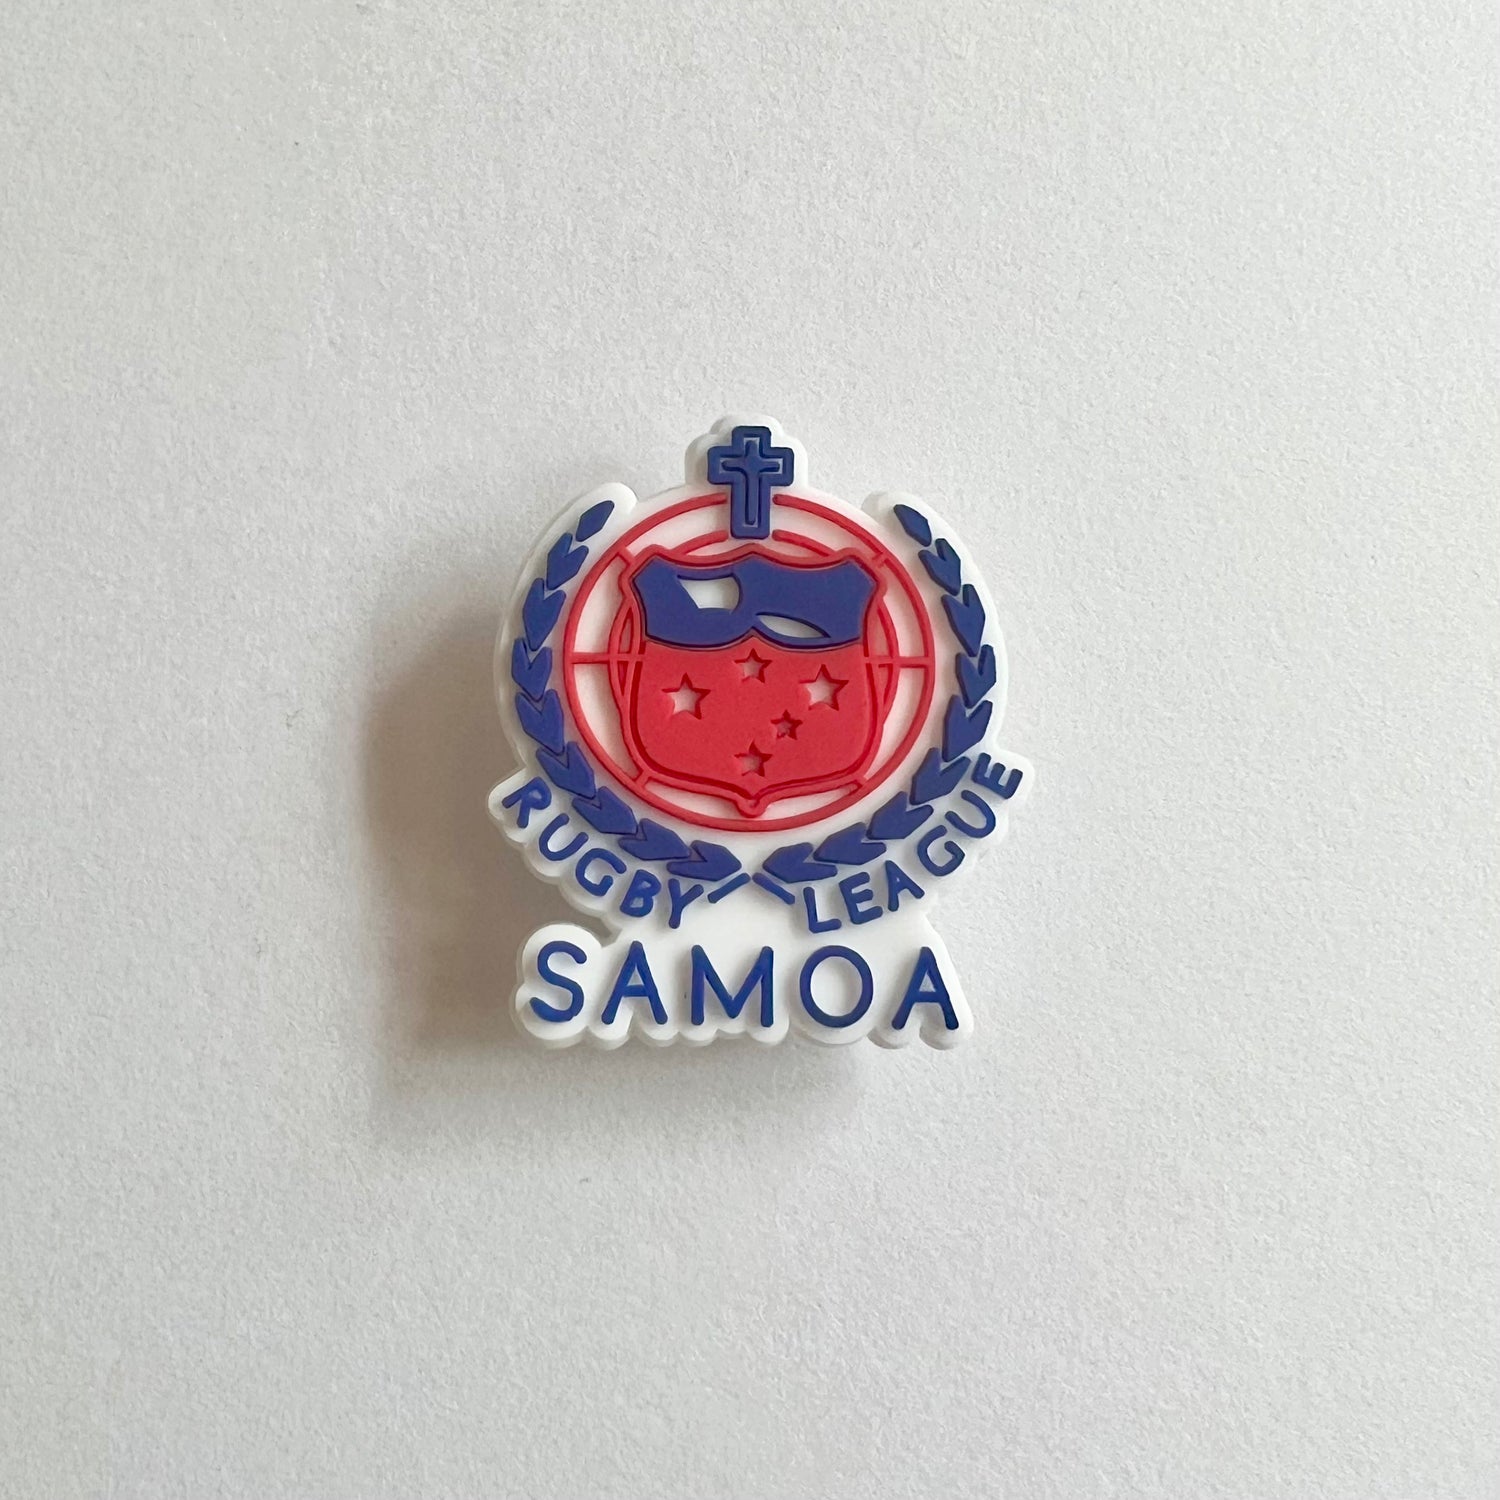 Samoa Rugby League Charm